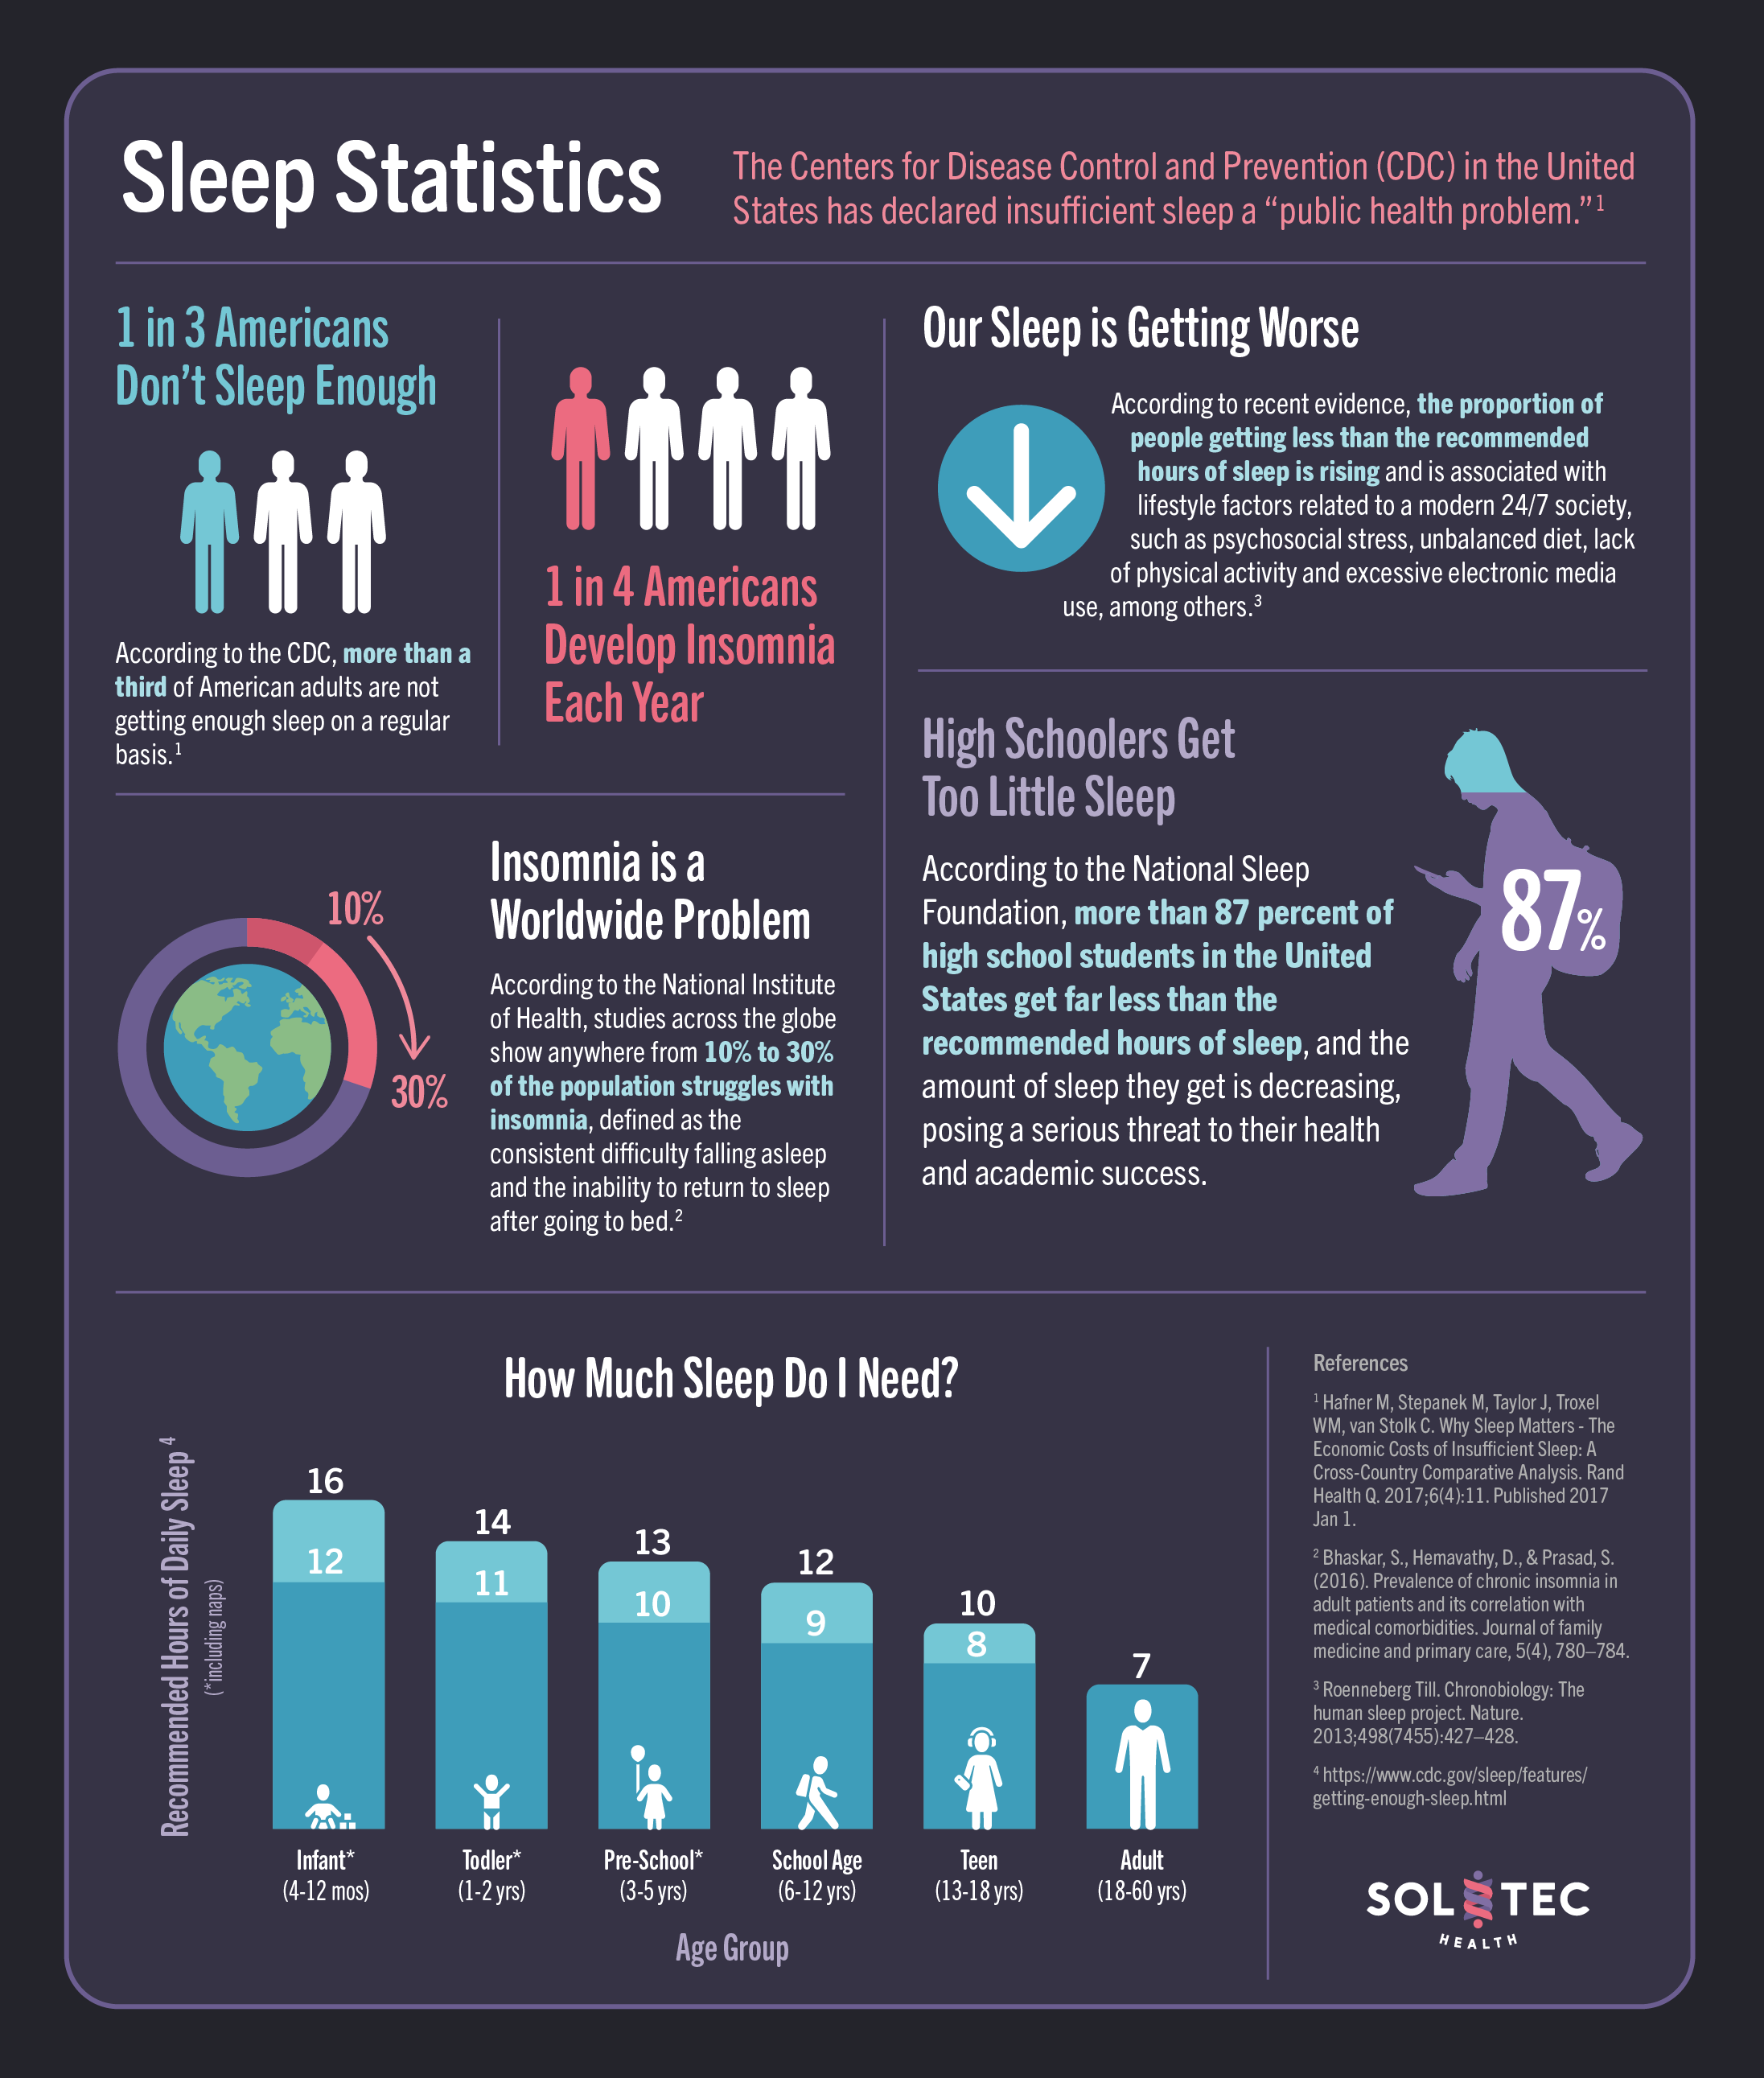 Sleep Statistics Image